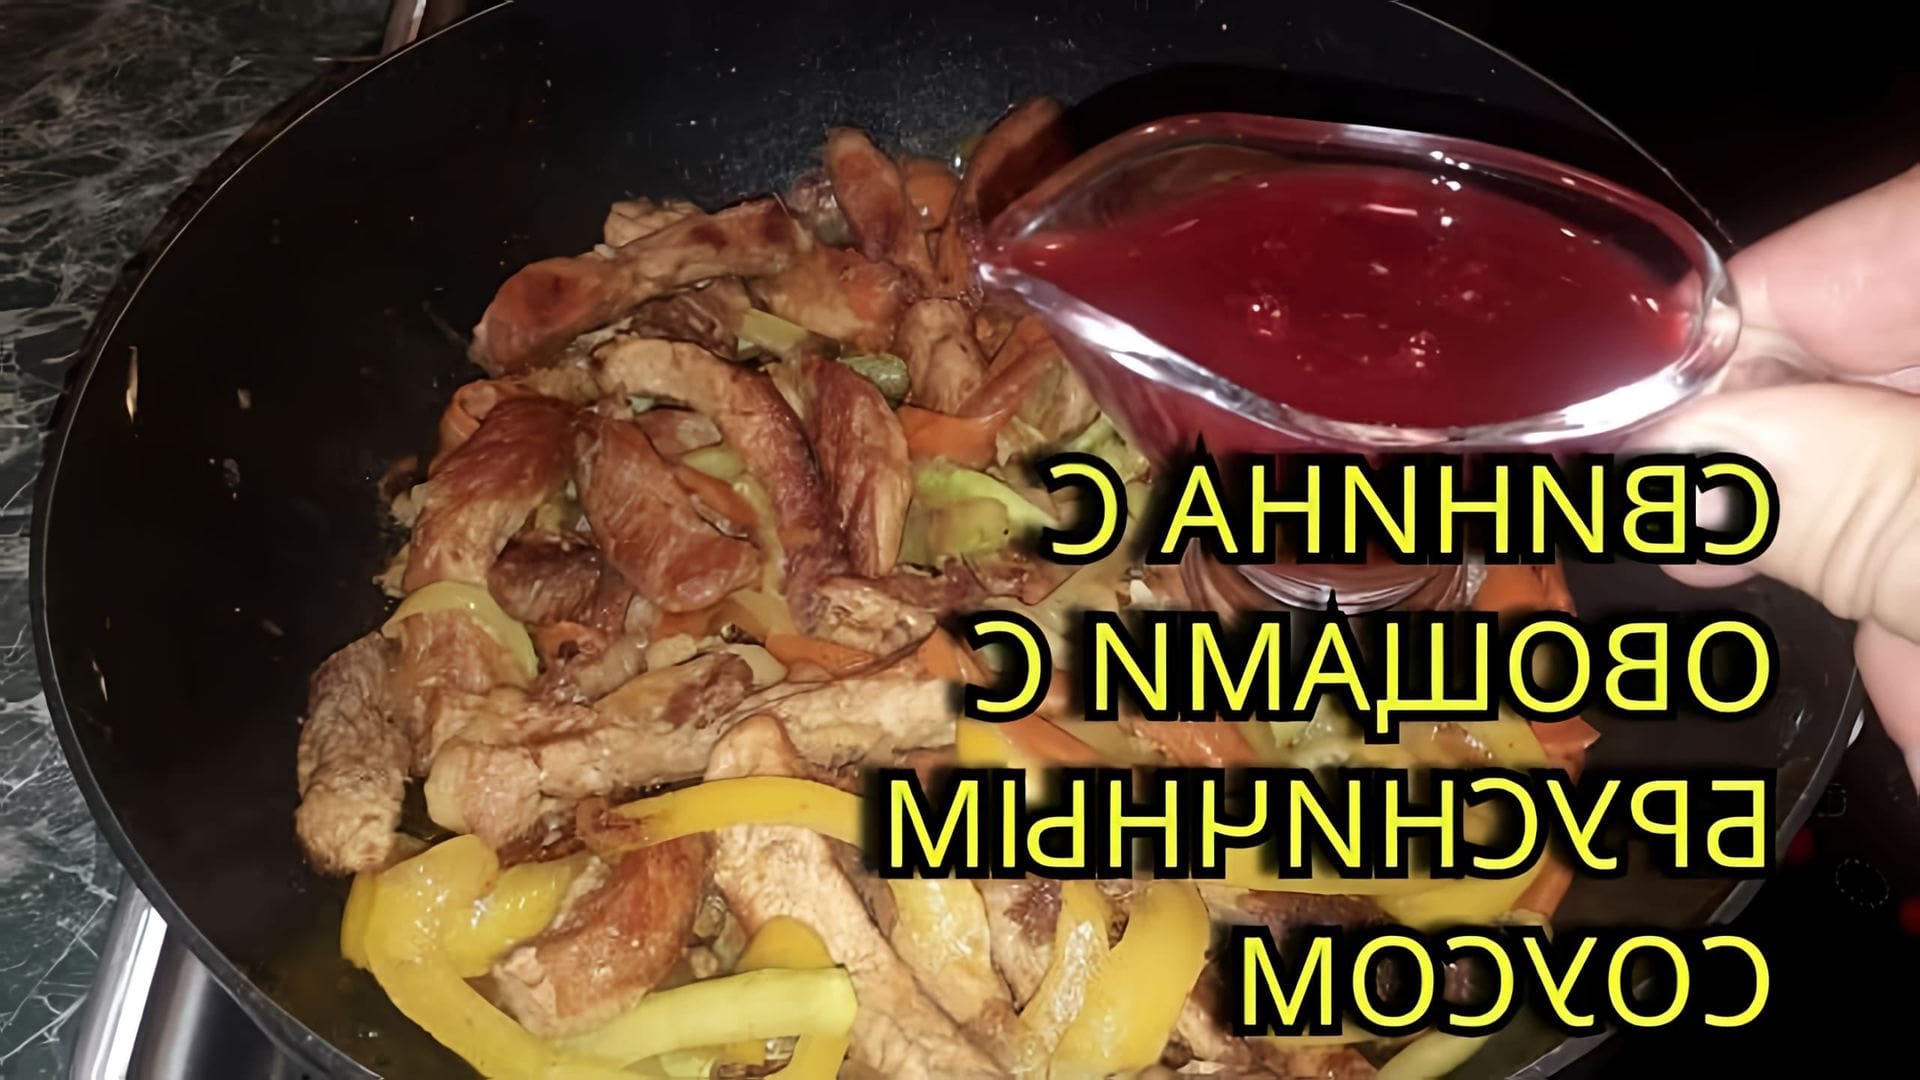 В этом видео демонстрируется процесс приготовления свинины с овощами в брусничном соусе